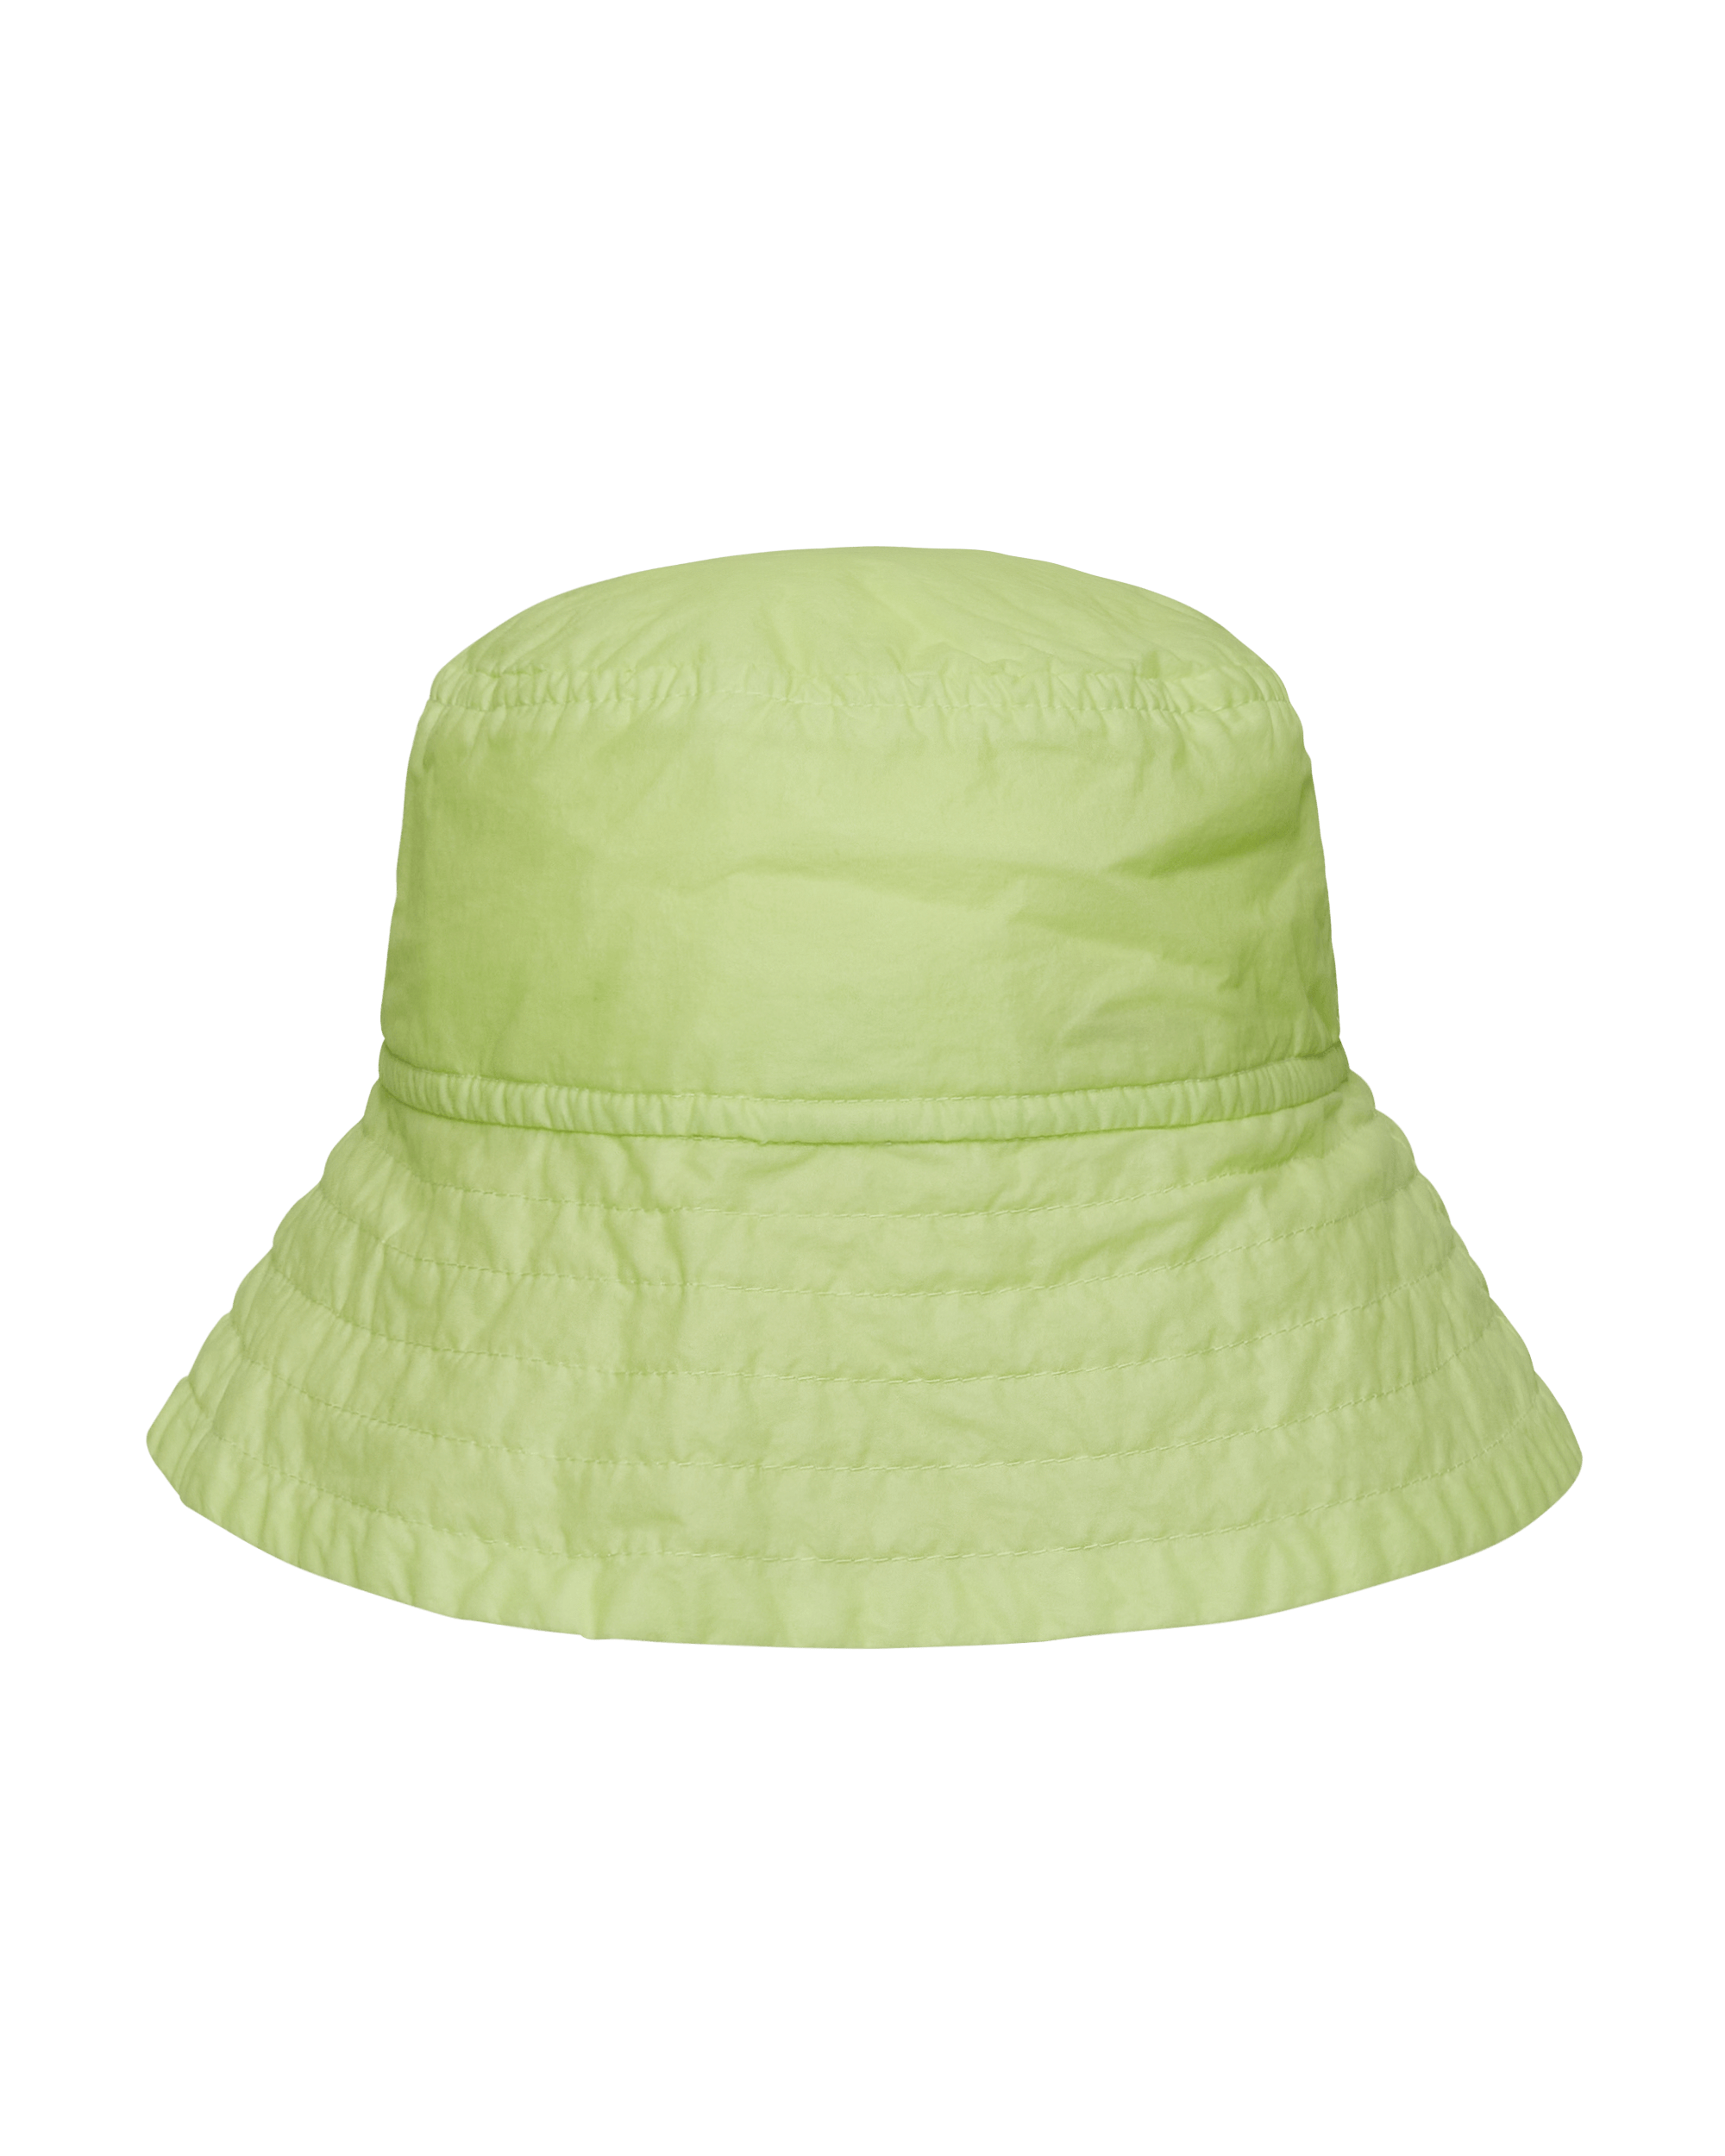 Dries Van Noten Gilly 4185 Lime  Hats Caps 029504-4185 201